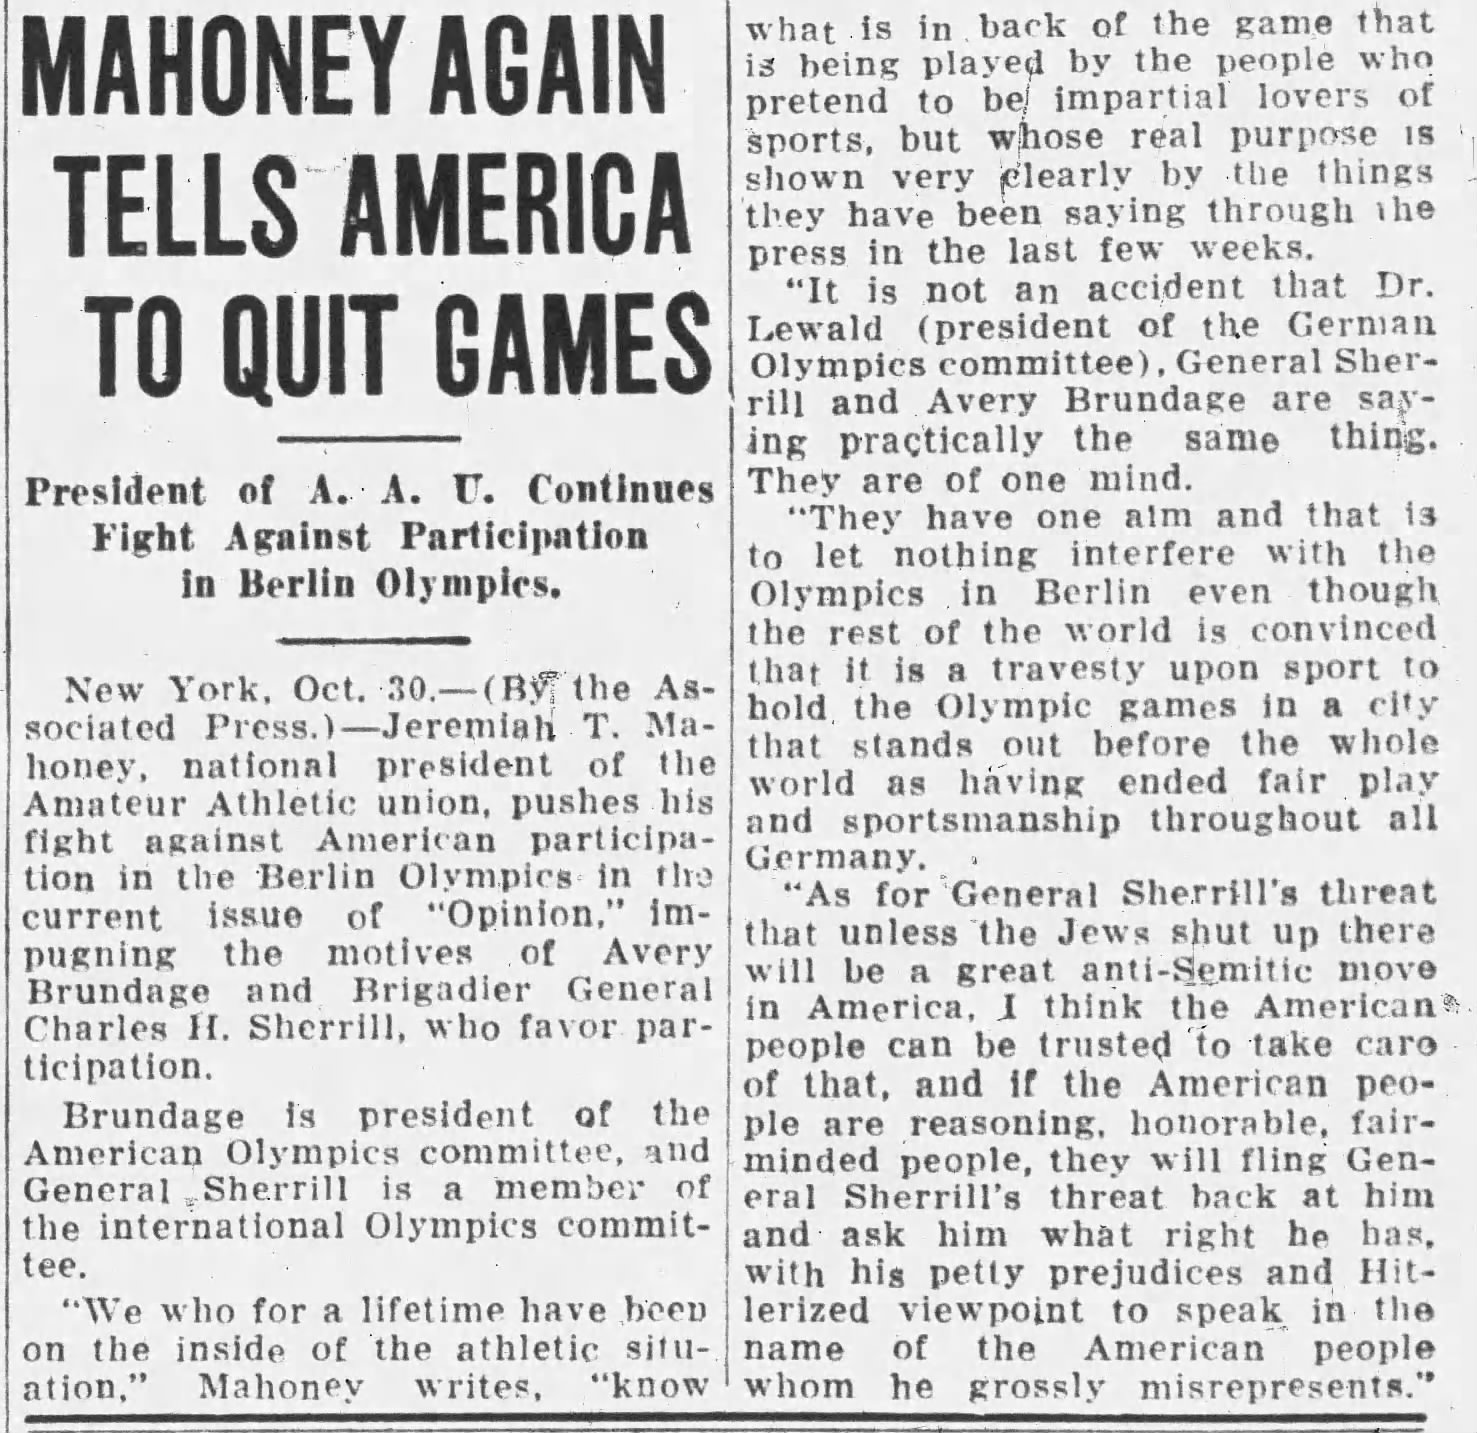 Mahoney Again Tells America to Quit Games